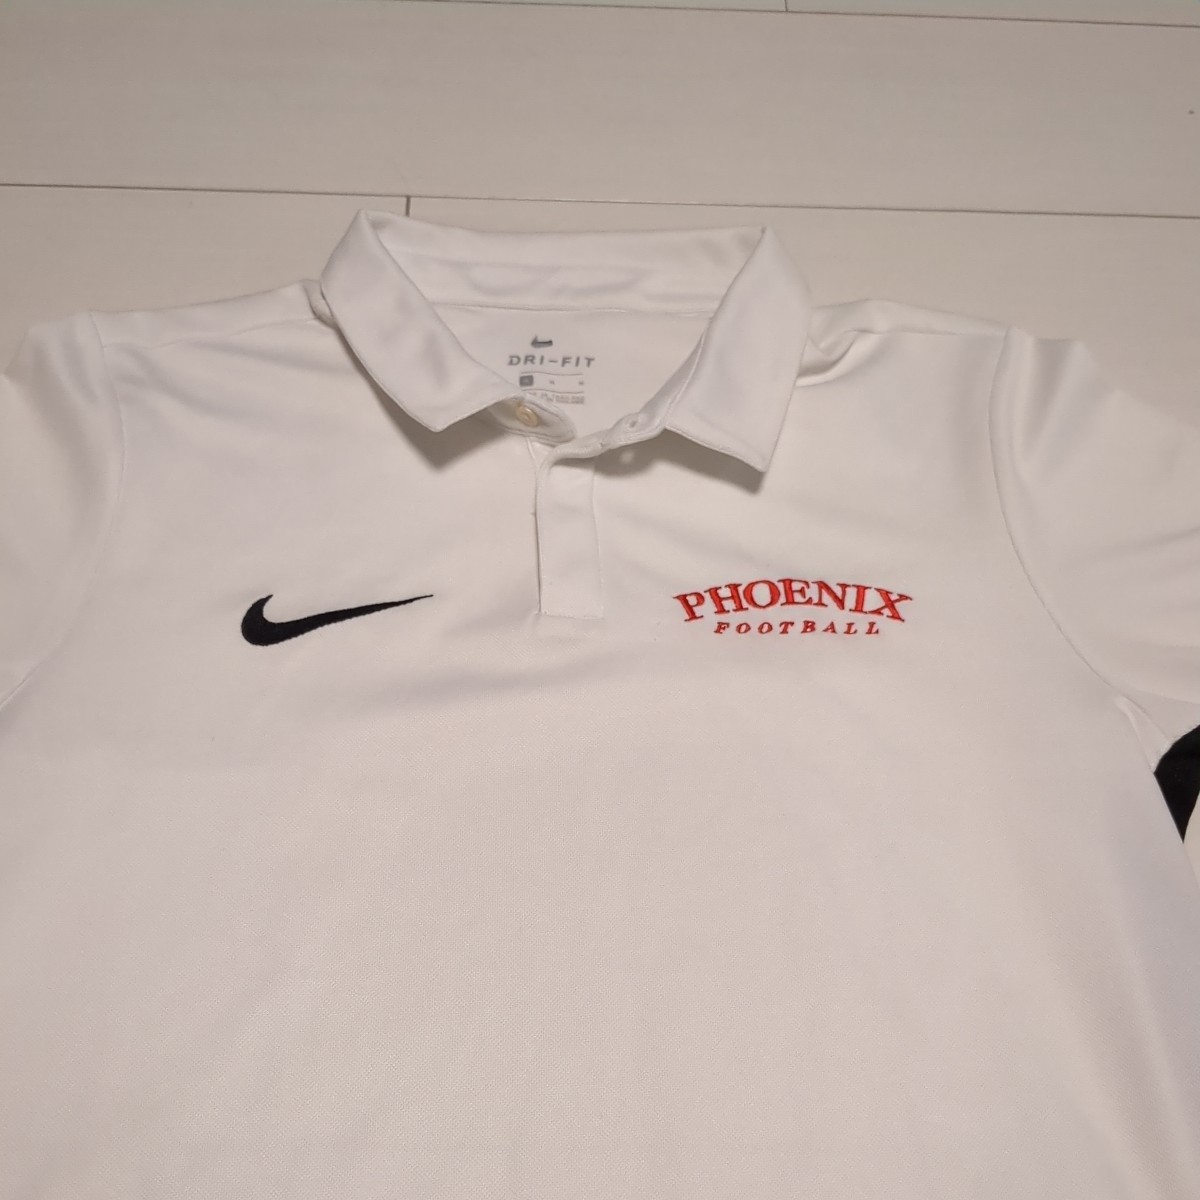 【非売品】日本大学アメフト部PHOENIX 選手支給ポロシャツ M NIKE